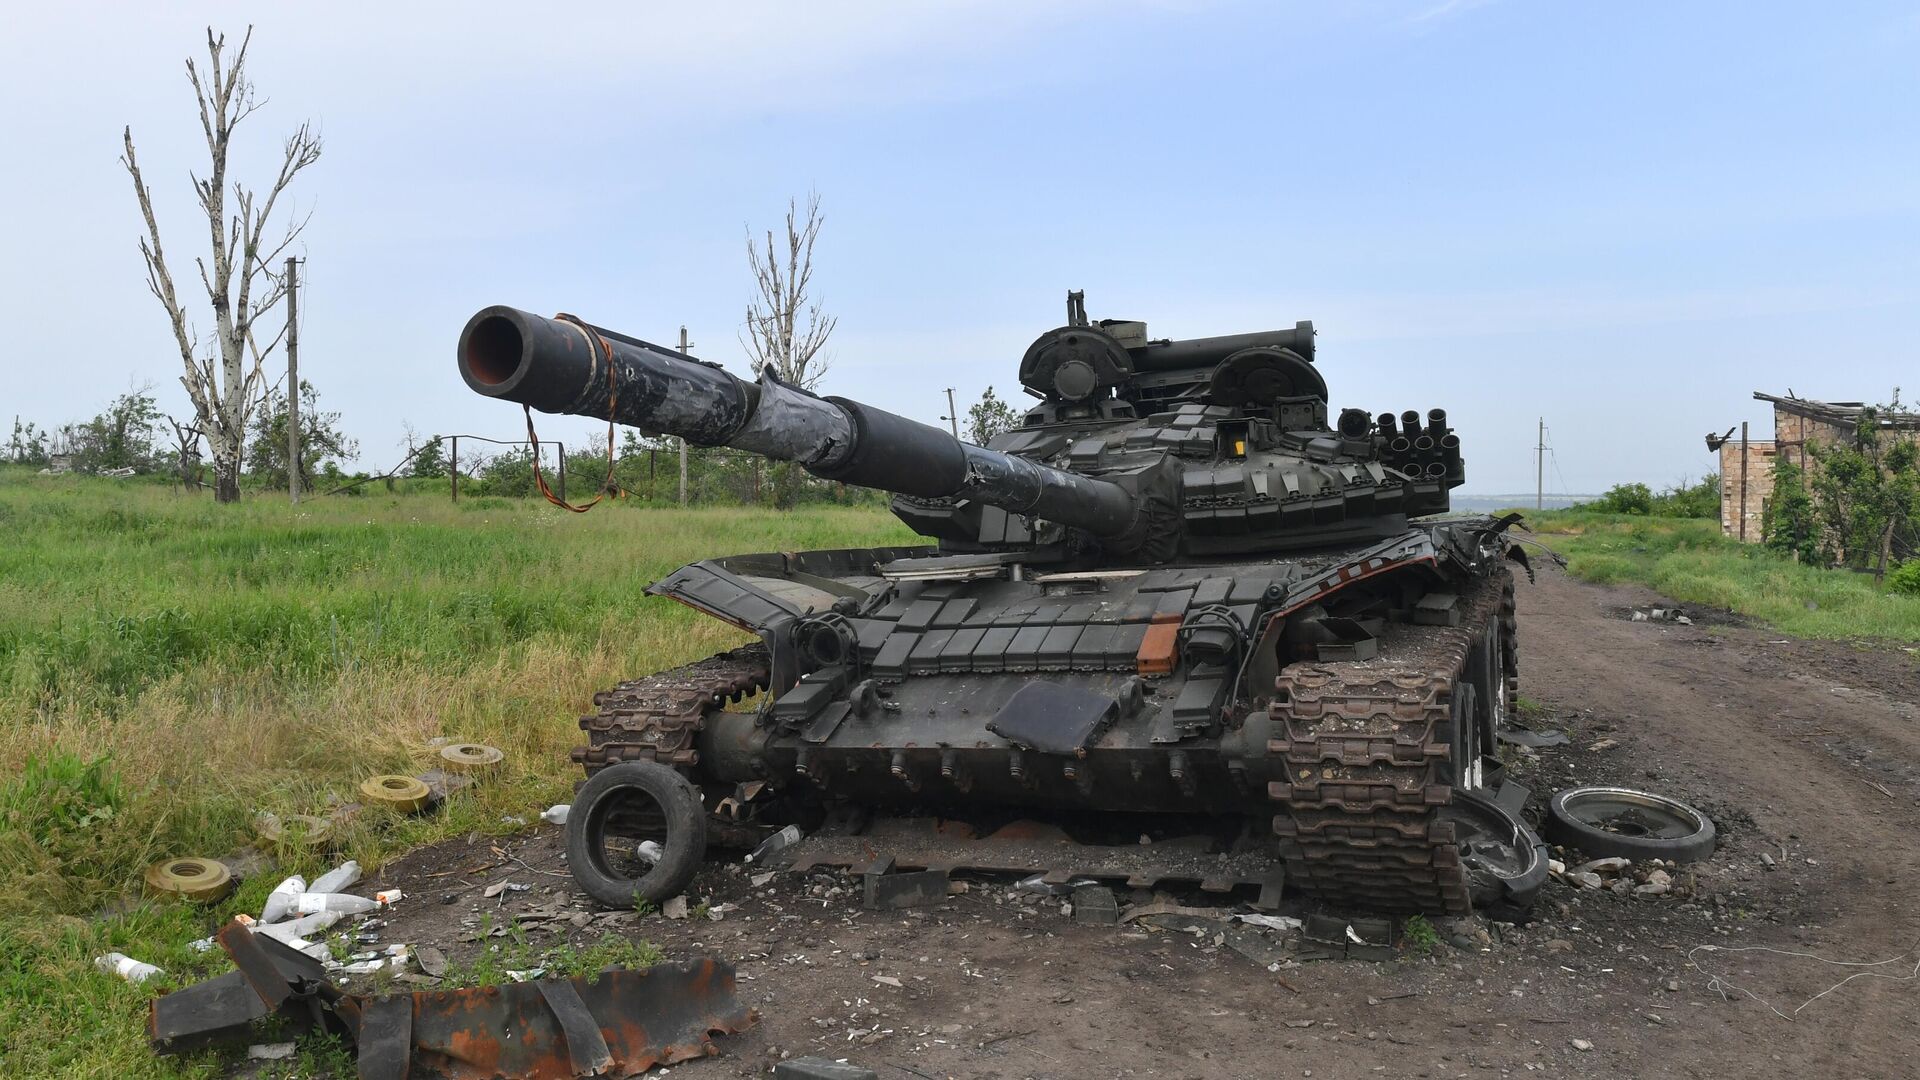 M-55S - The Upgraded T-55 Sent to Ukraine 